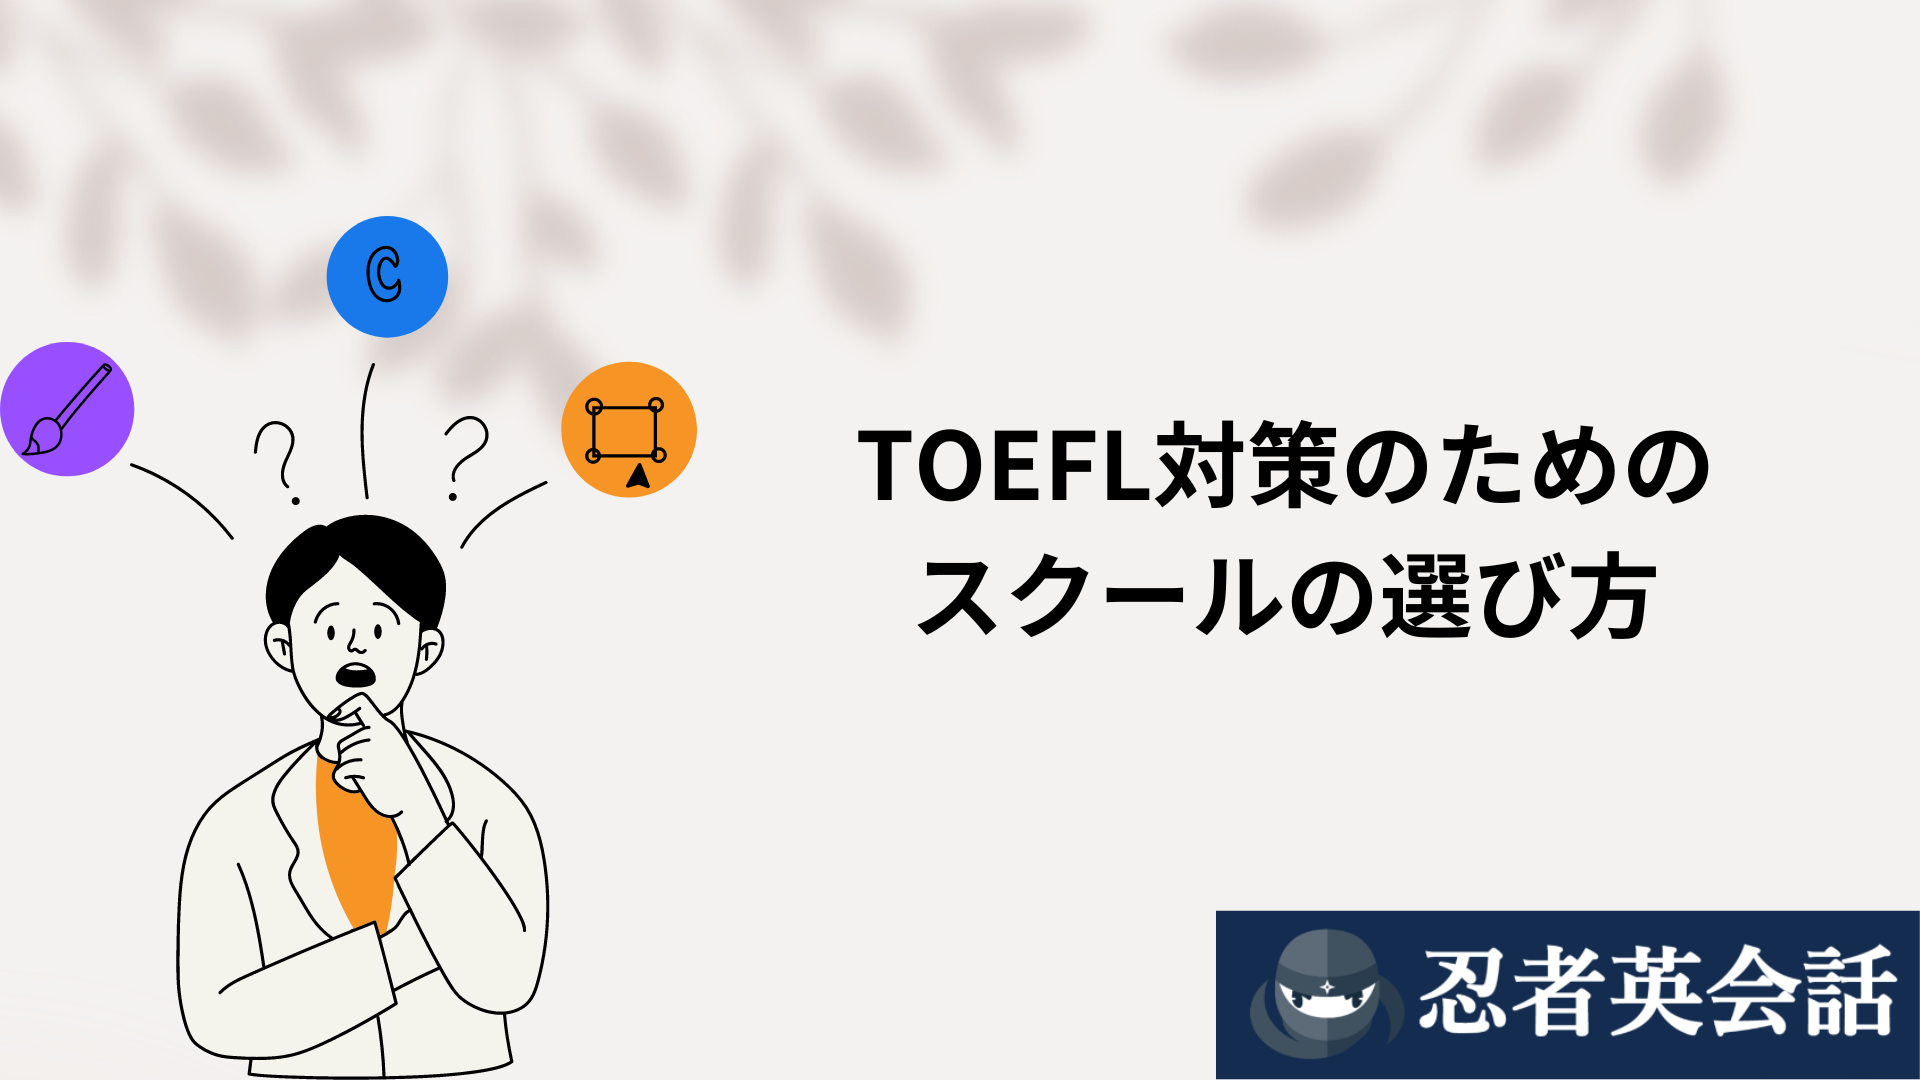 TOEFL対策のための スクールの選び方